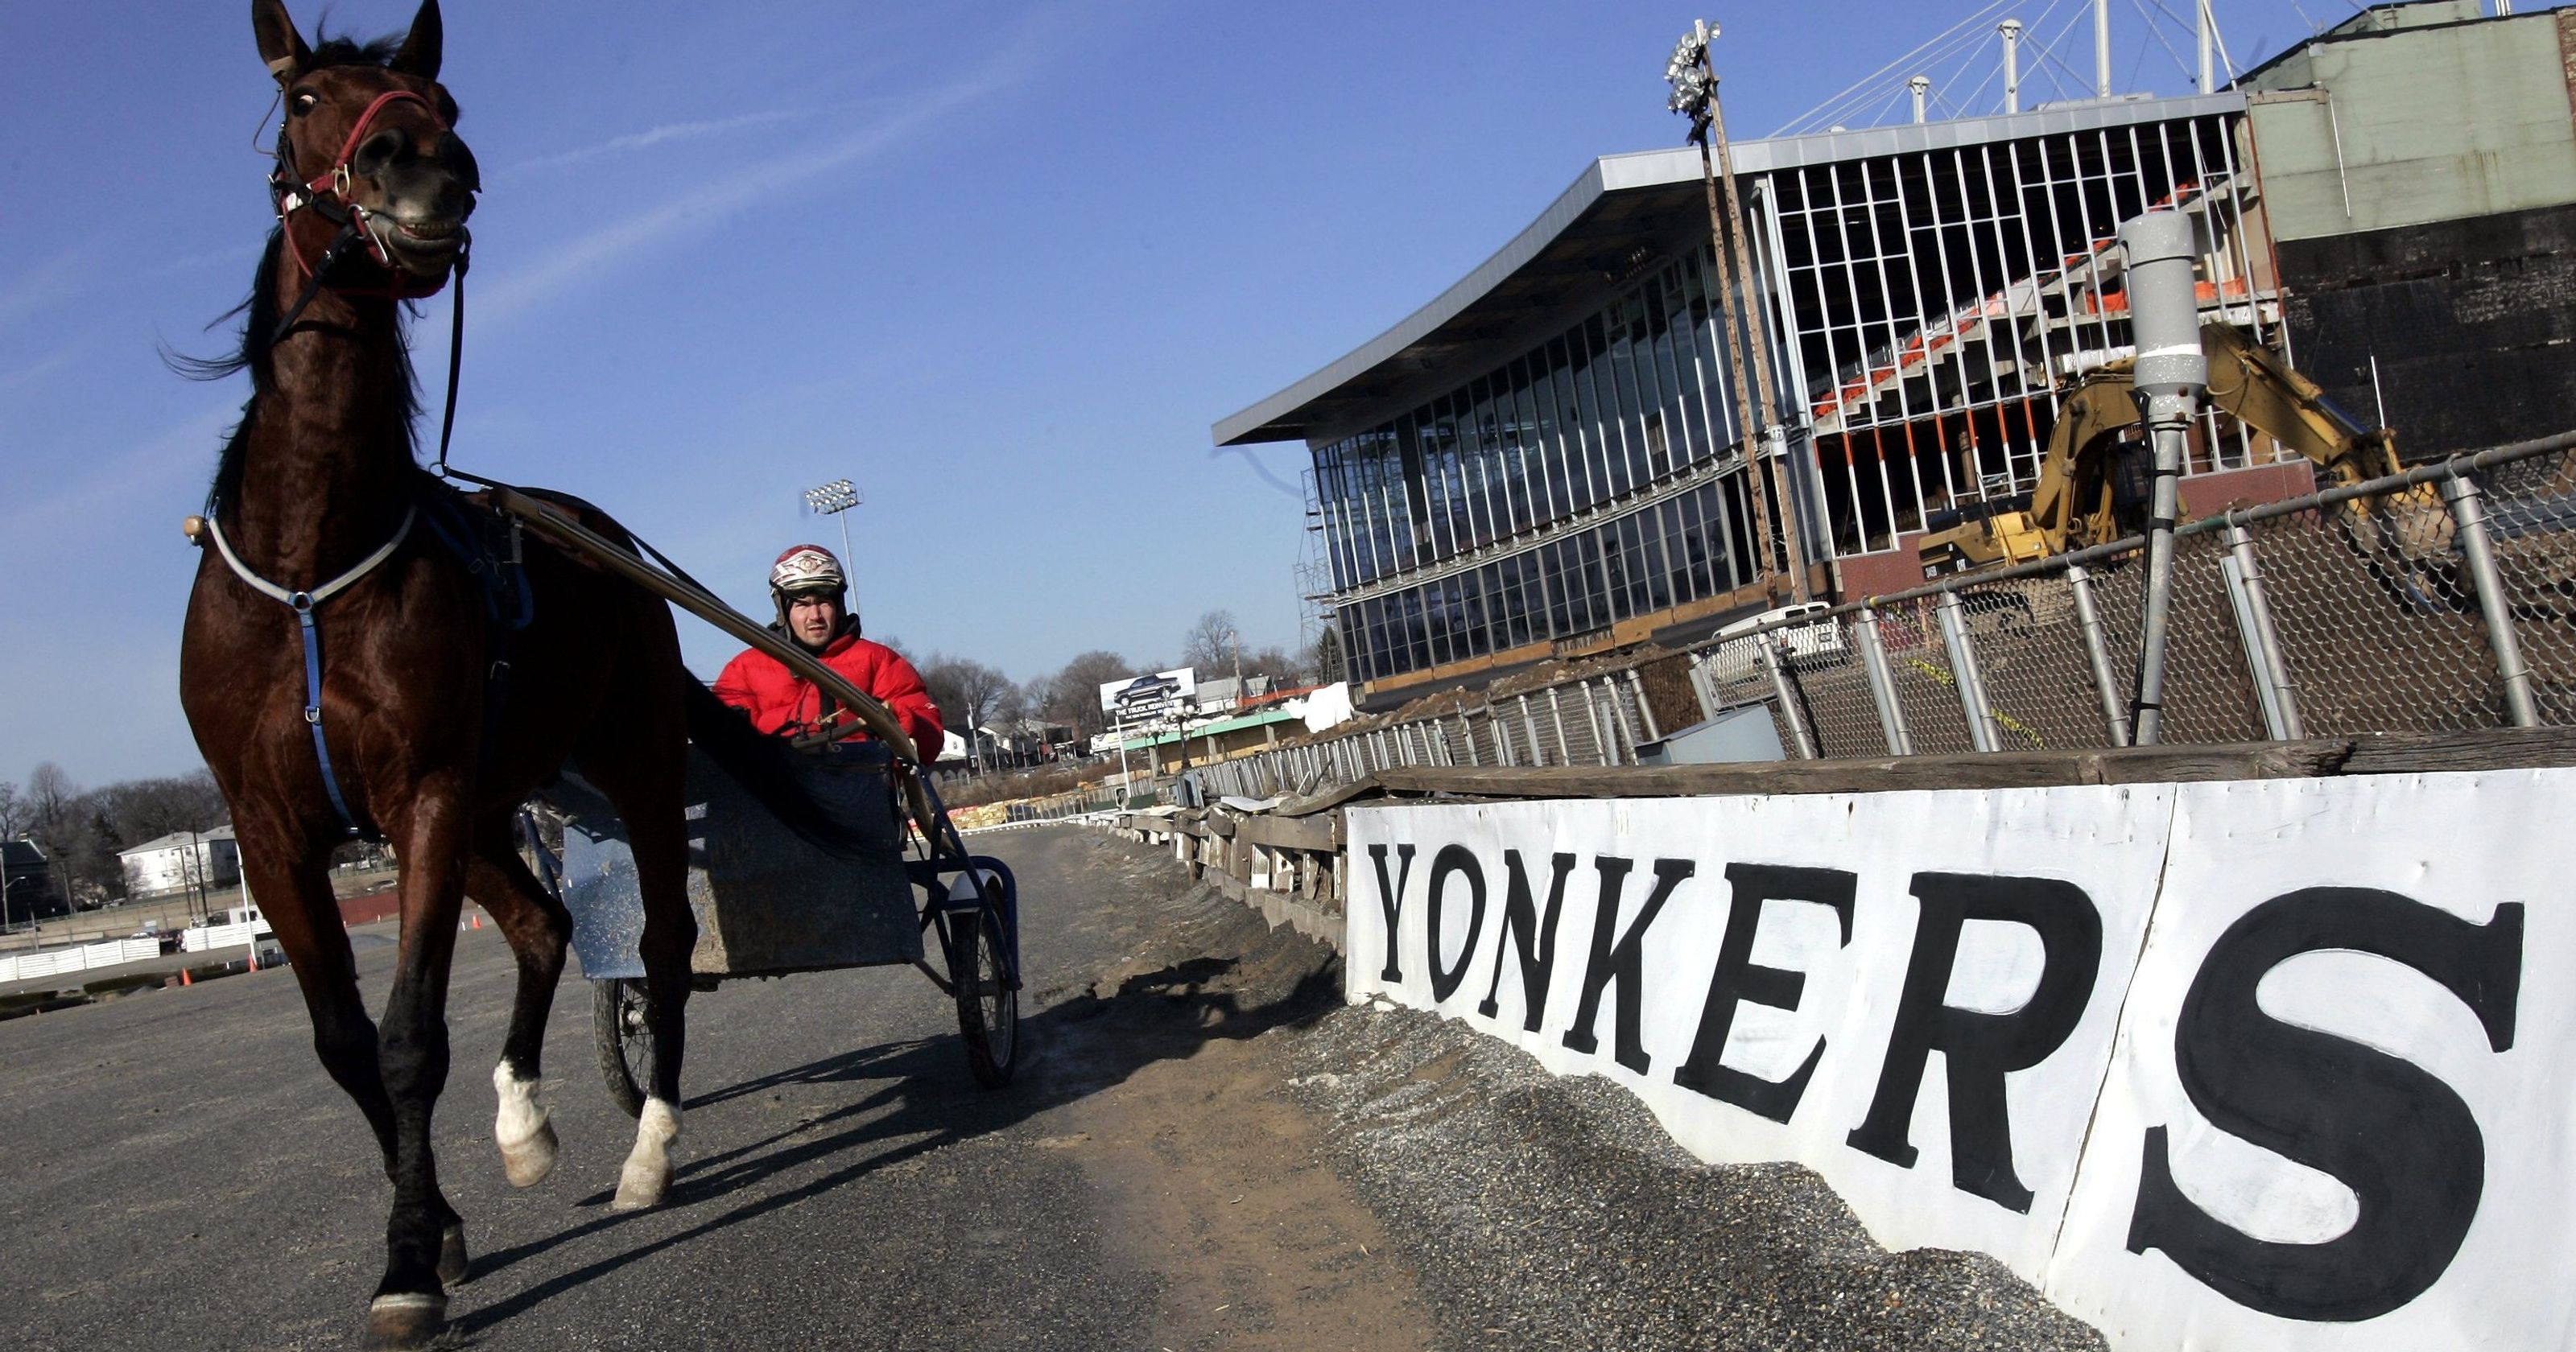 Yonkers Raceway